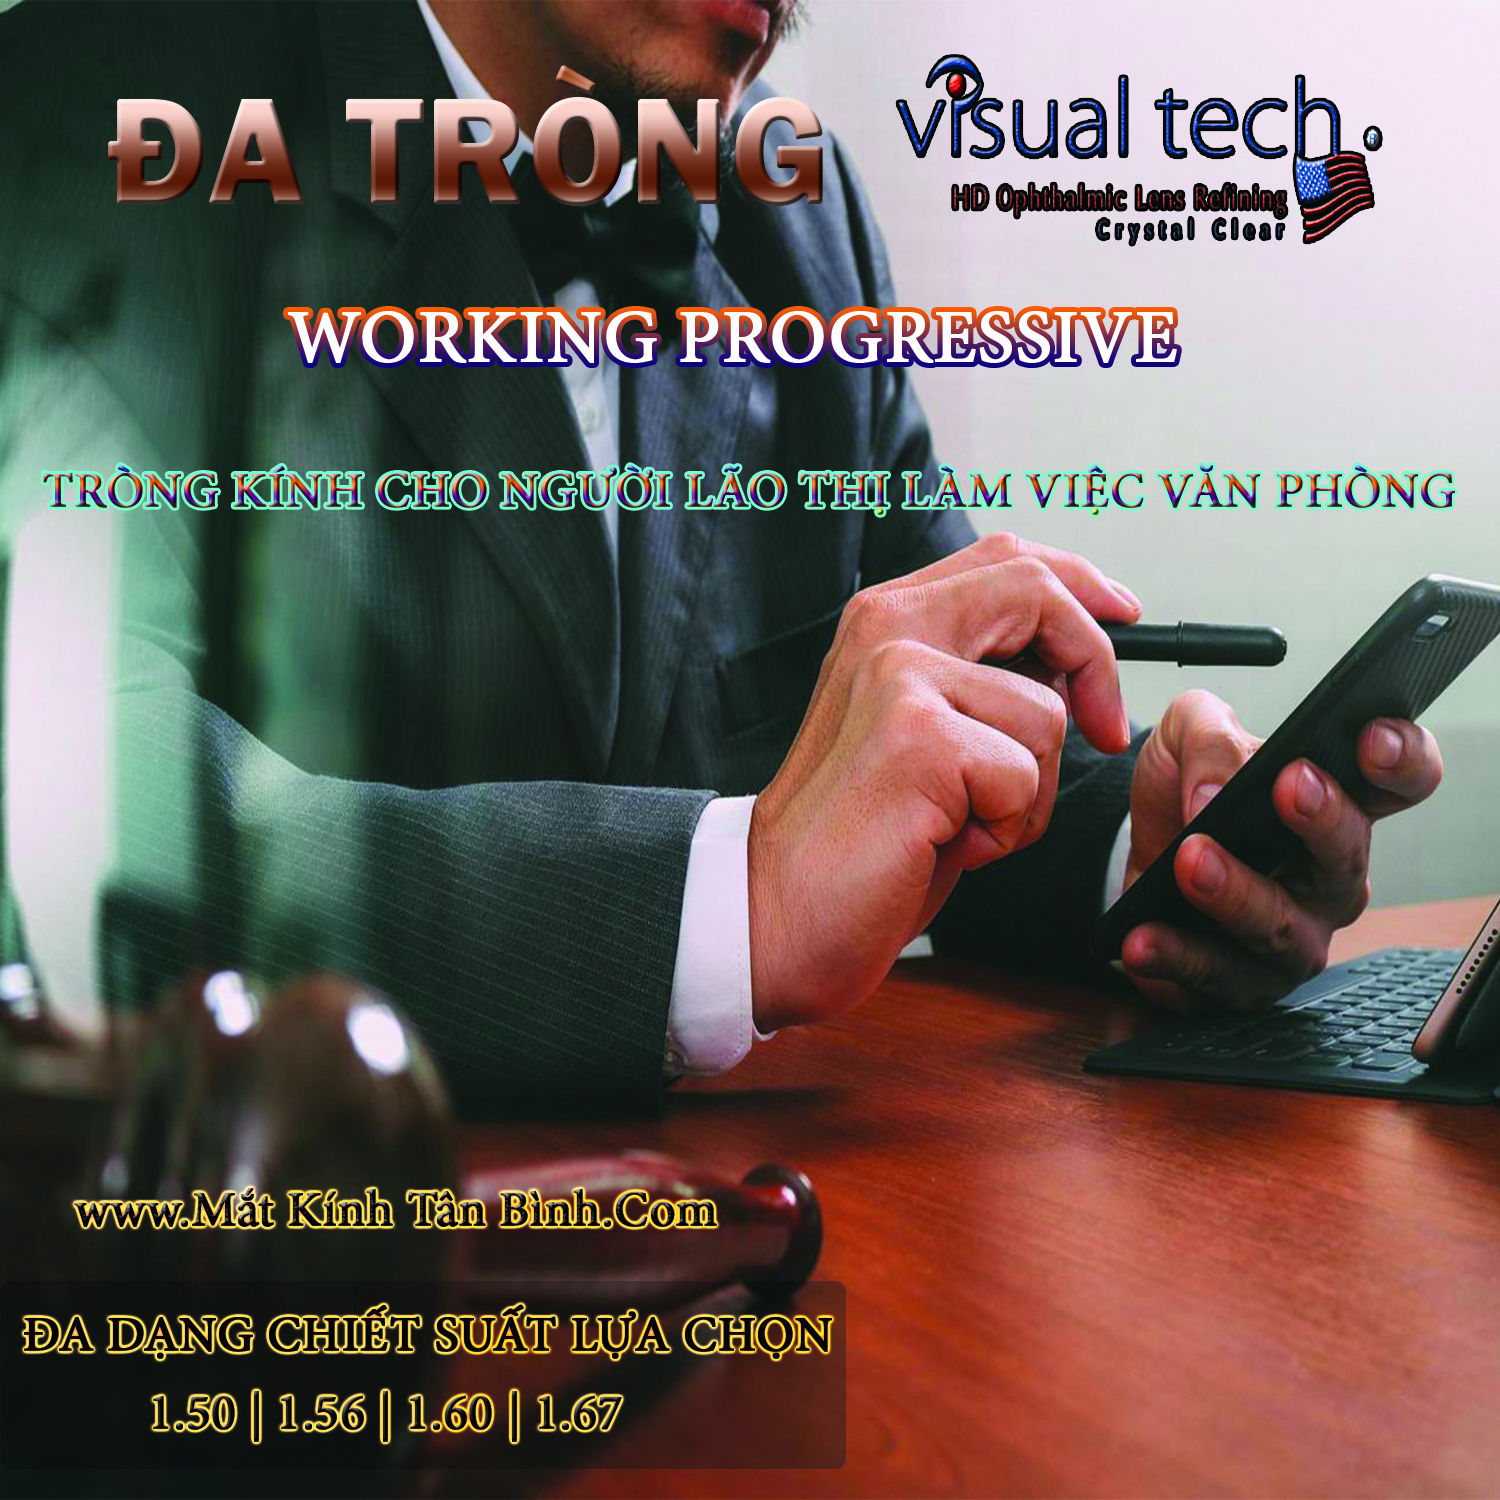 Kính Đa Tròng Văn Phòng Visual Tech® Working Progressive Chính Hãng